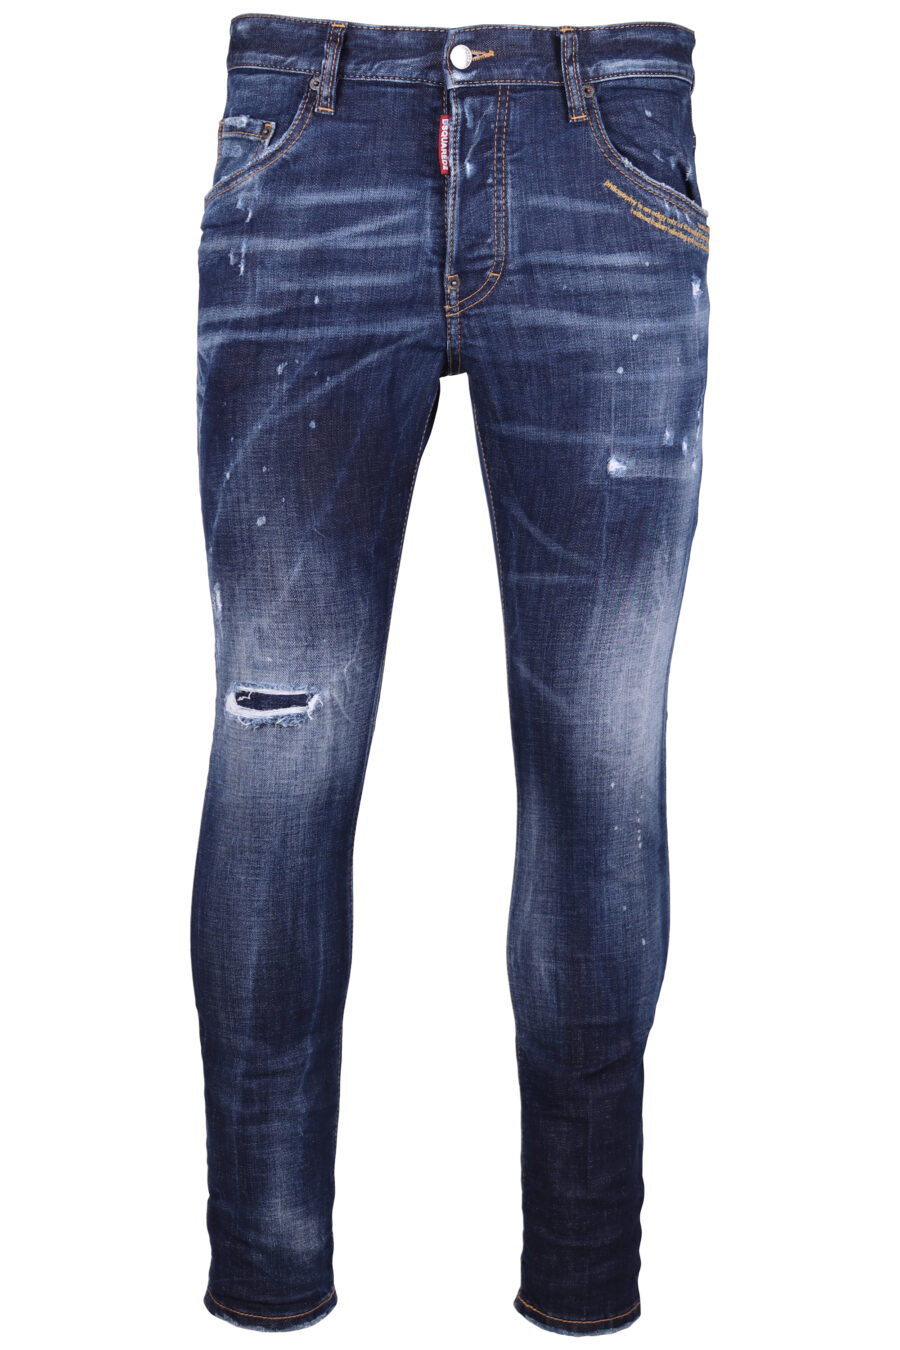 Halbdurchsichtige dunkelblaue "Skater"-Jeans mit roten Details - IMG 9291